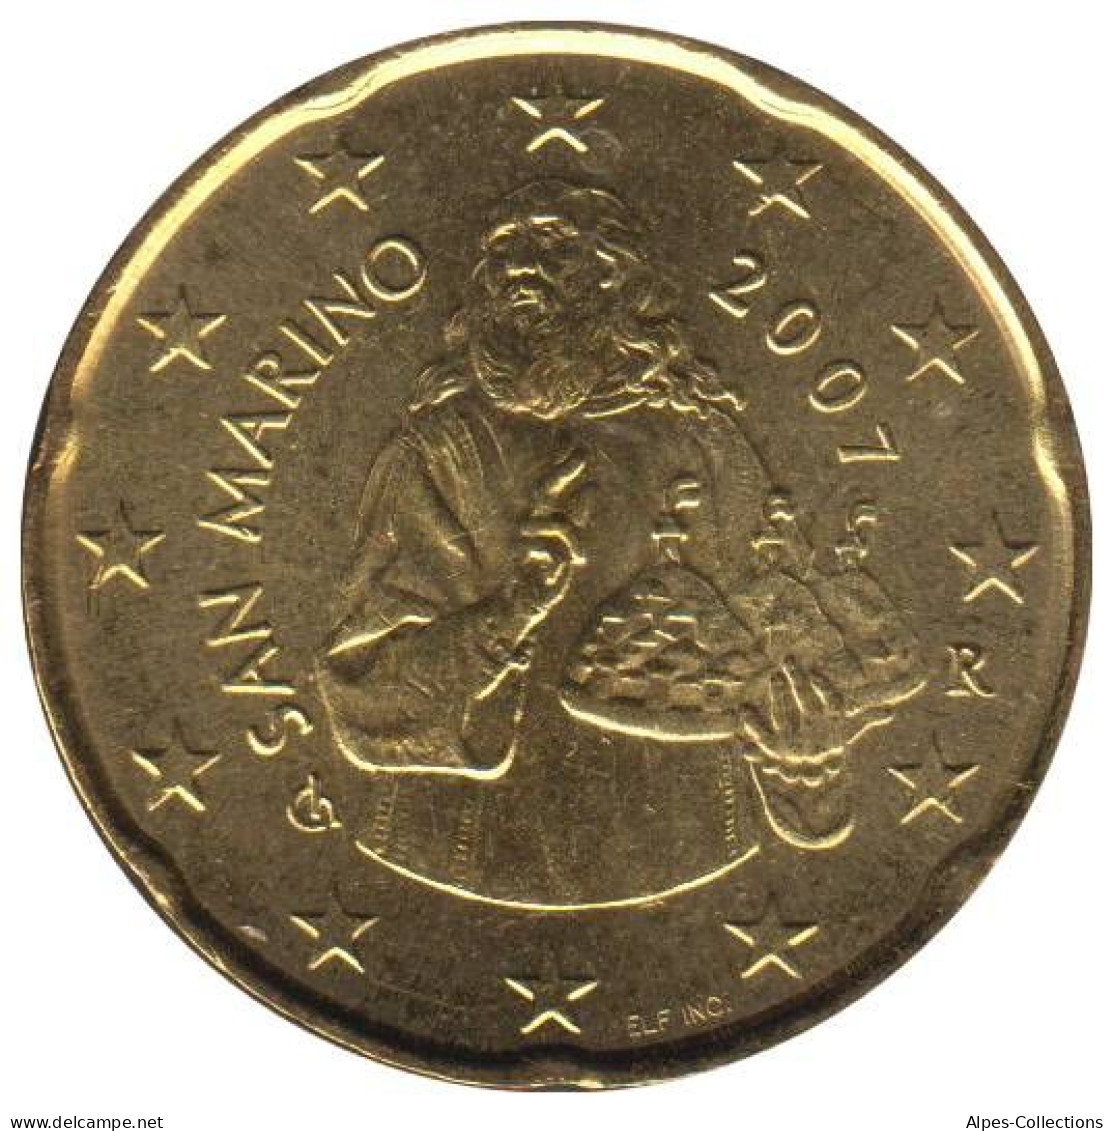 SA02007.1 - SAINT MARIN - 20 Cents - 2007 - San Marino